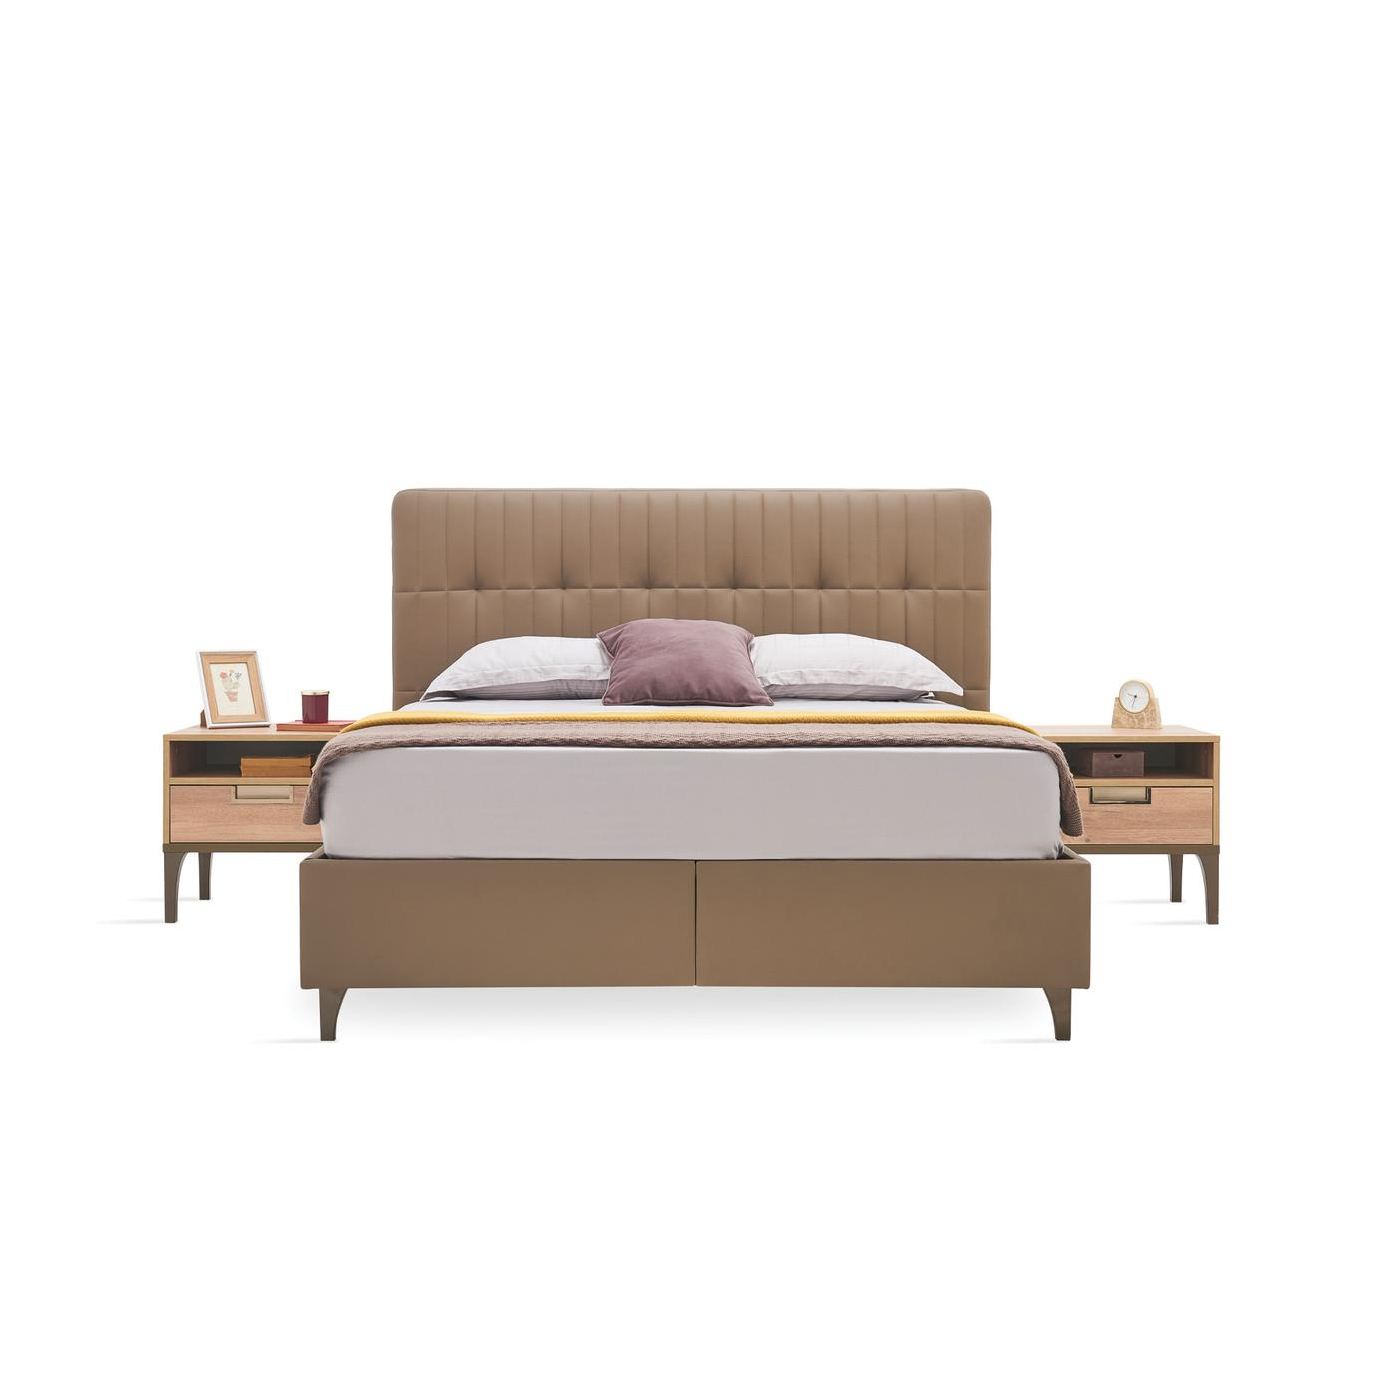 Кровать Enza Home Sona, двуспальная, с подъемным механизмом, 200х200 см